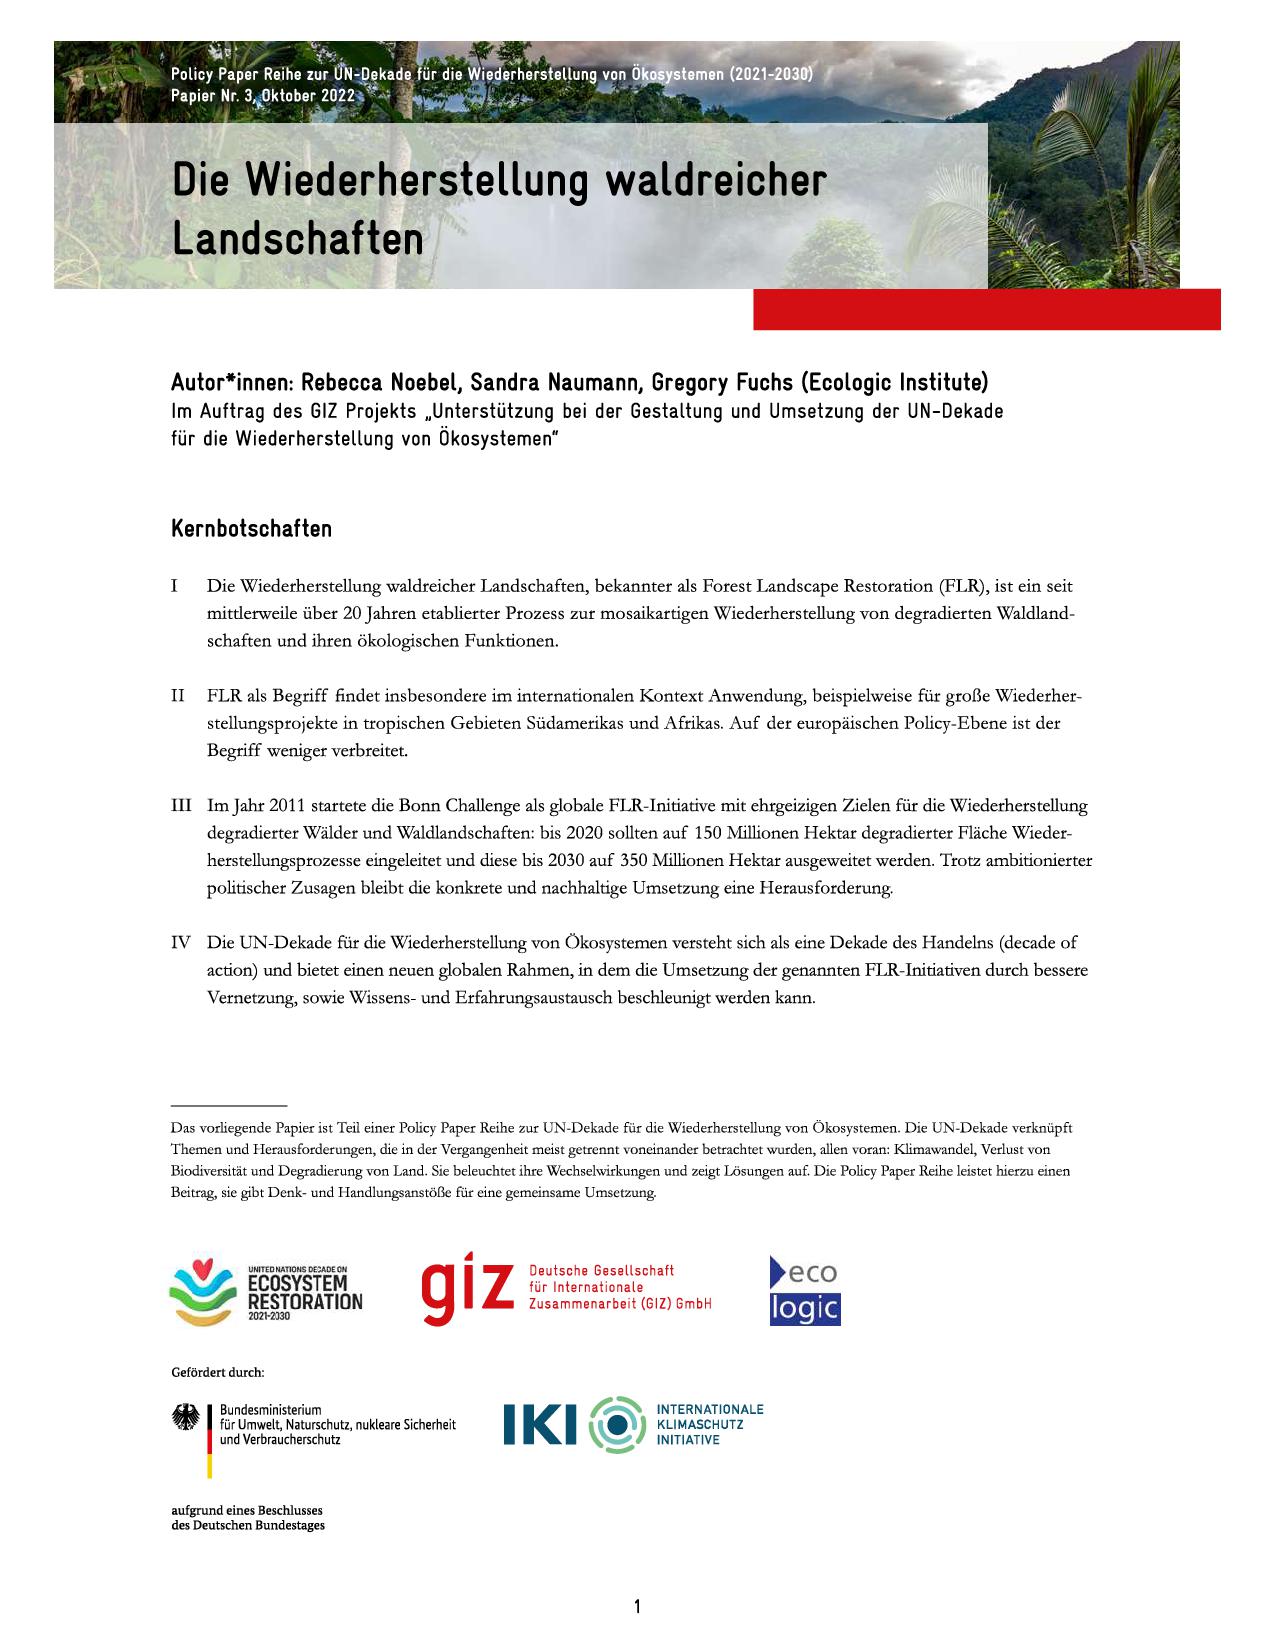 Cover Page of Policy Brief: "Die Wiederherstellung waldreicher Landschaften" with Key Messages